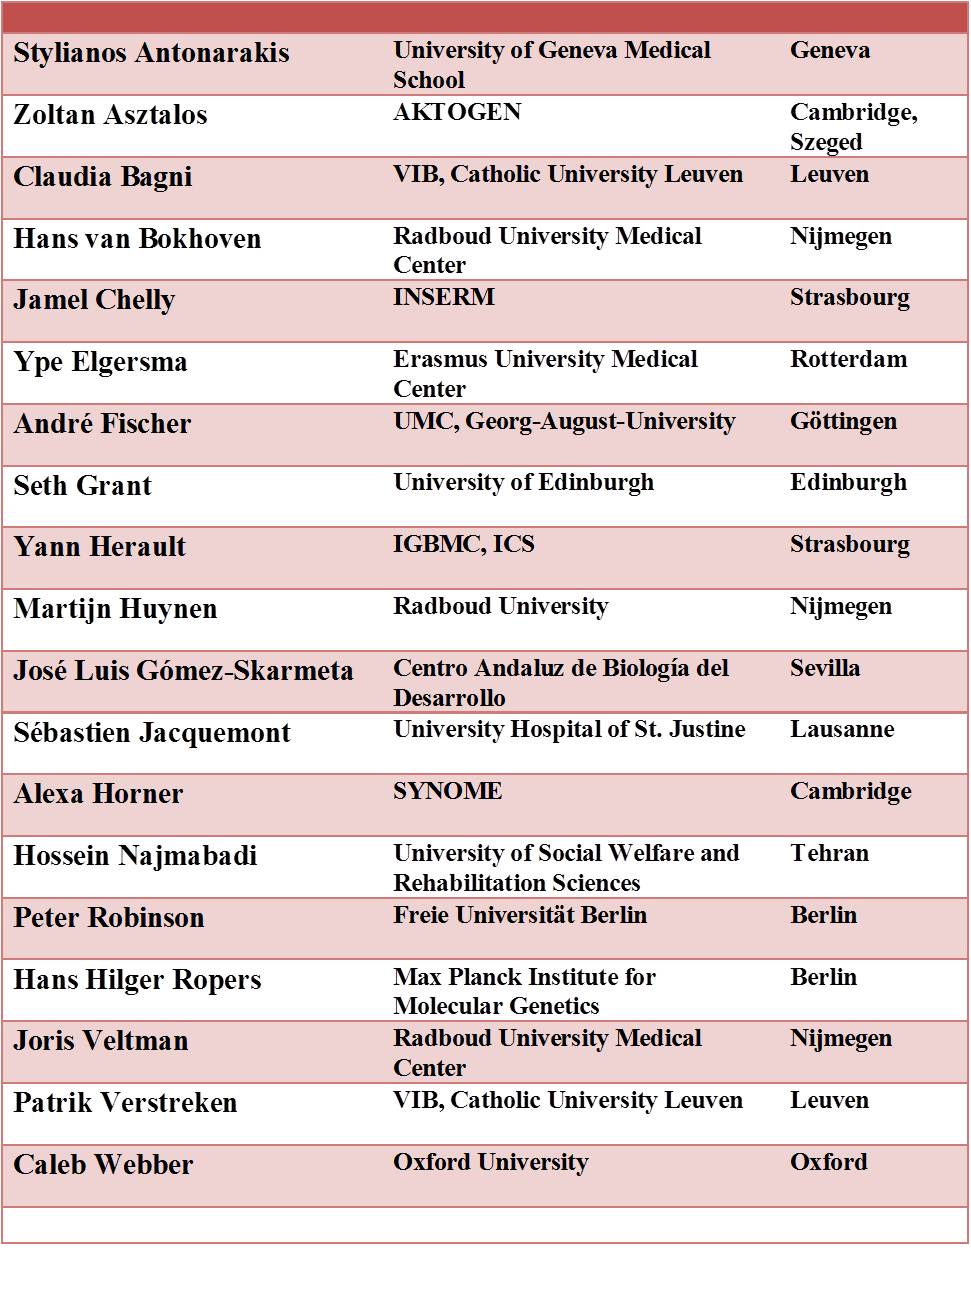 List of Invited Speakers 2015